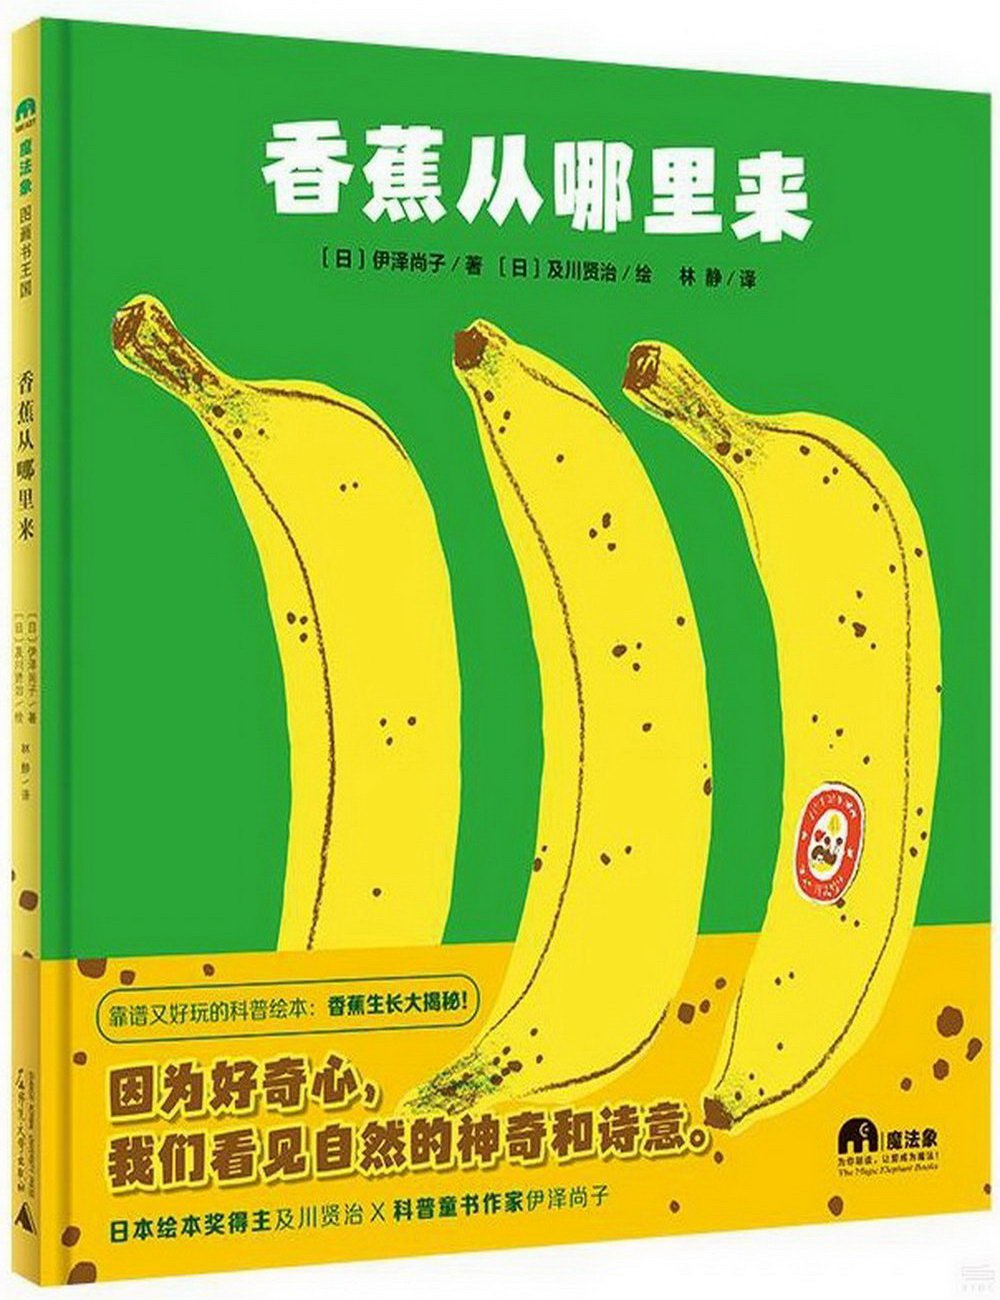 香蕉從哪裡來